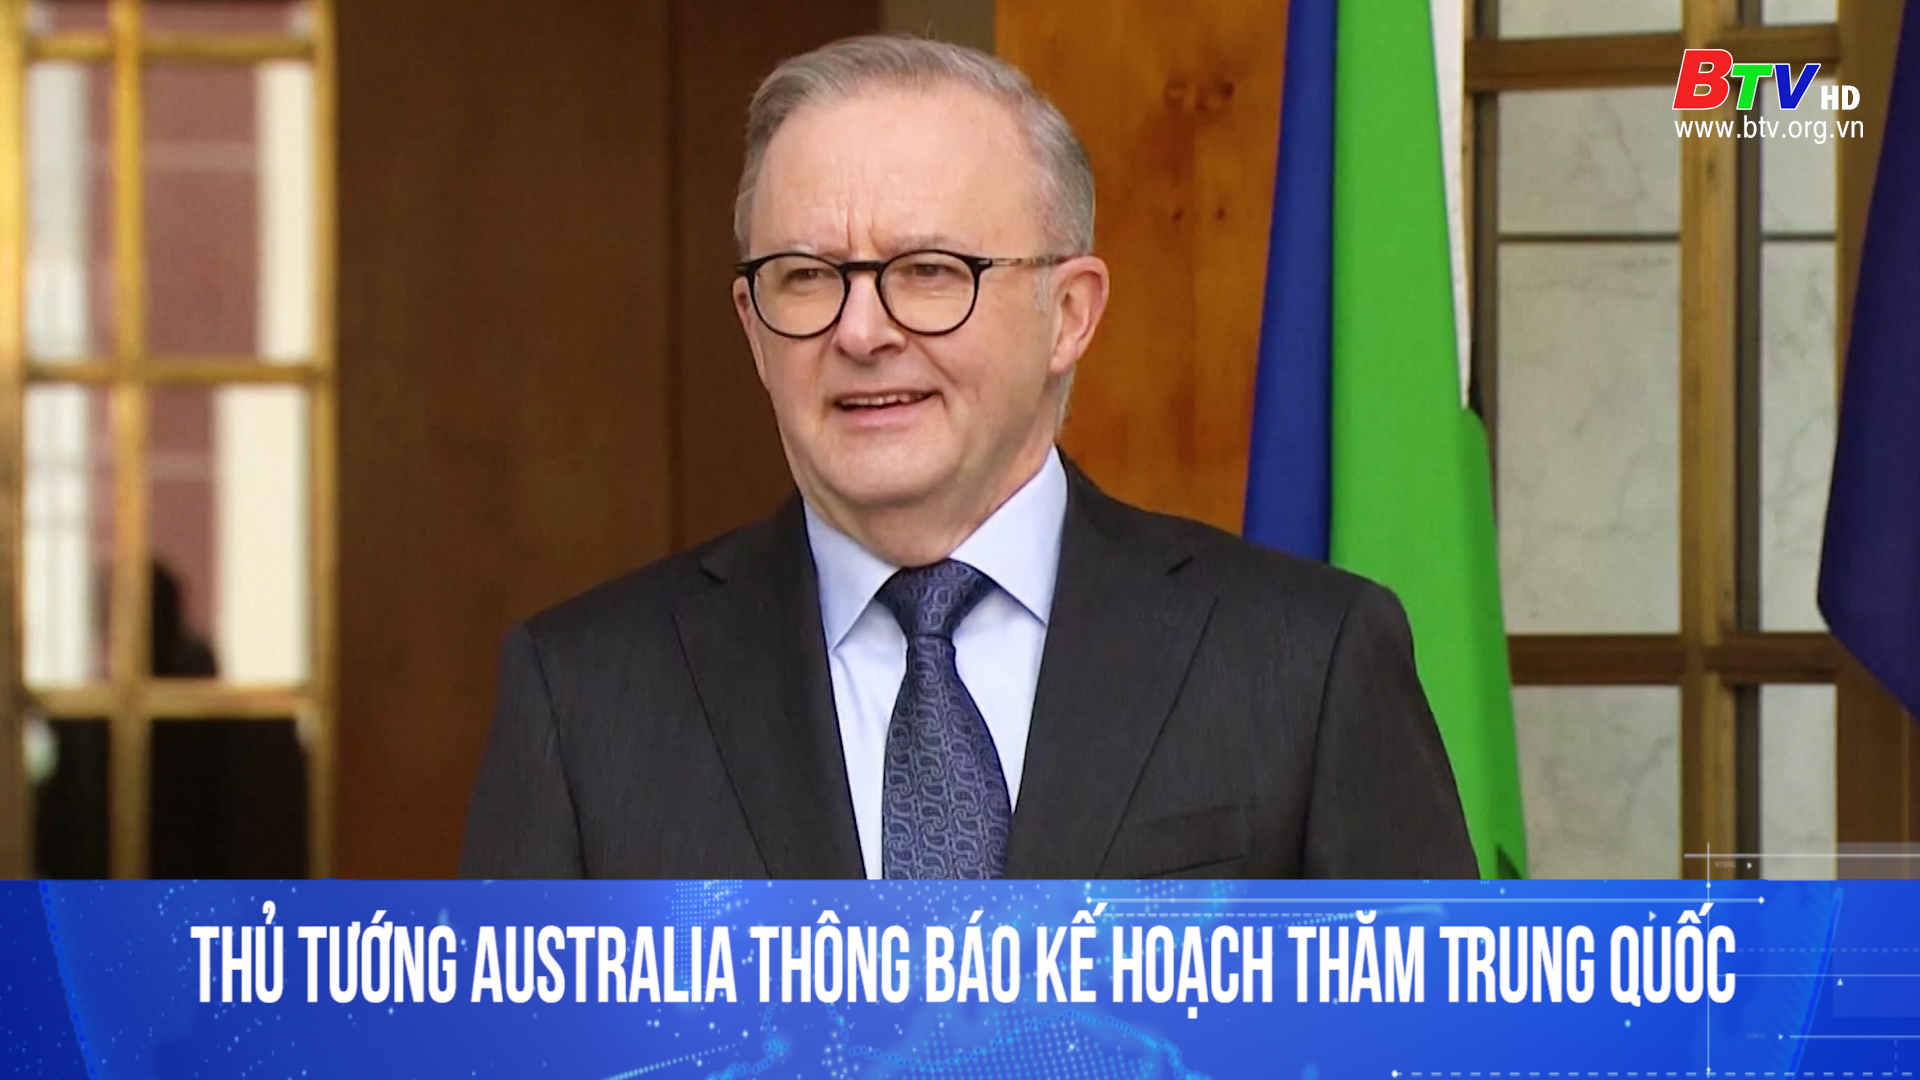 Thủ tướng Australia thông báo kế hoạch thăm Trung Quốc